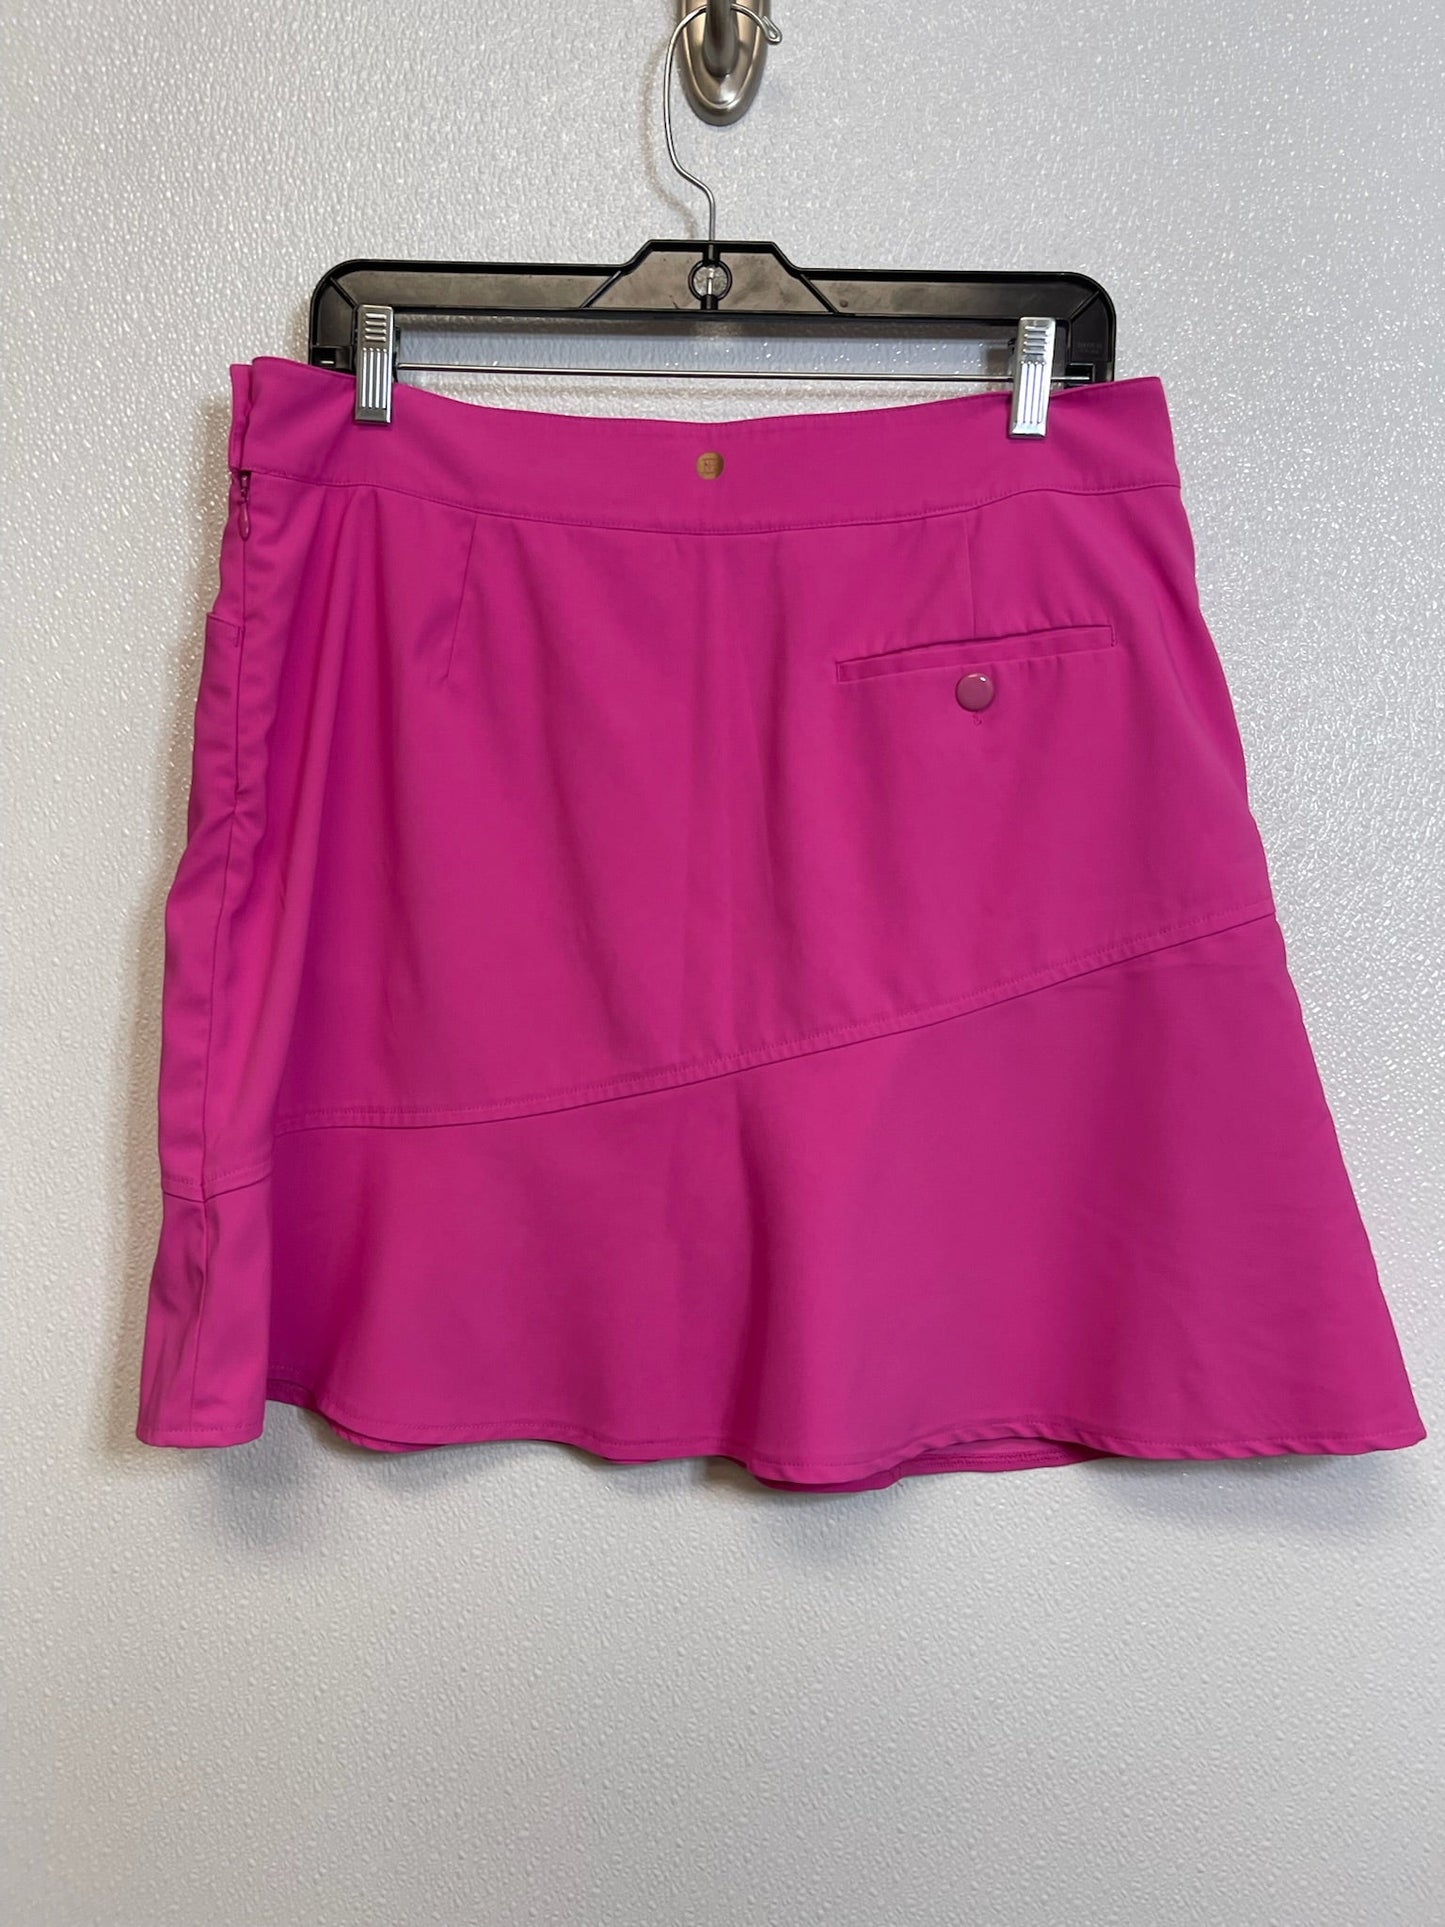 Hot Pink Athletic Skirt Skort Cme, Size 8